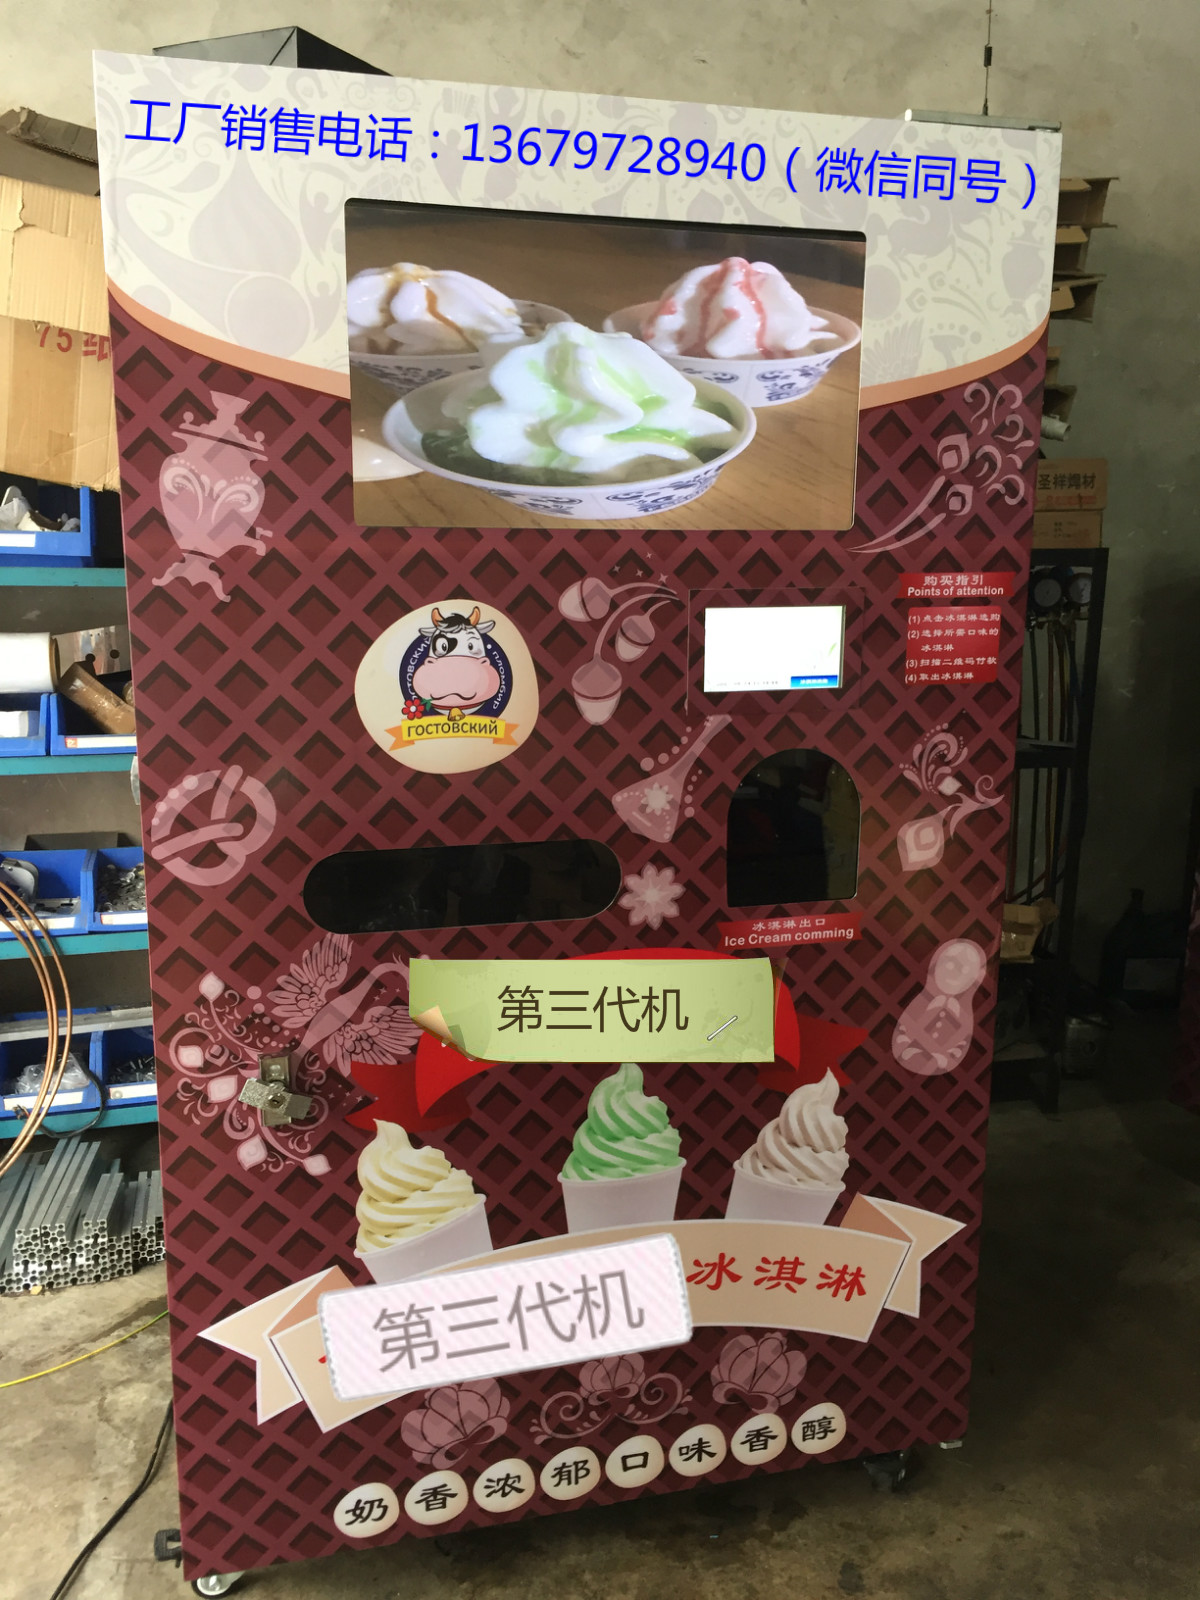 自动冰淇淋售卖机工厂厂家智能语音对话自动冰淇淋贩卖机 智能冰淇淋售卖机厂家